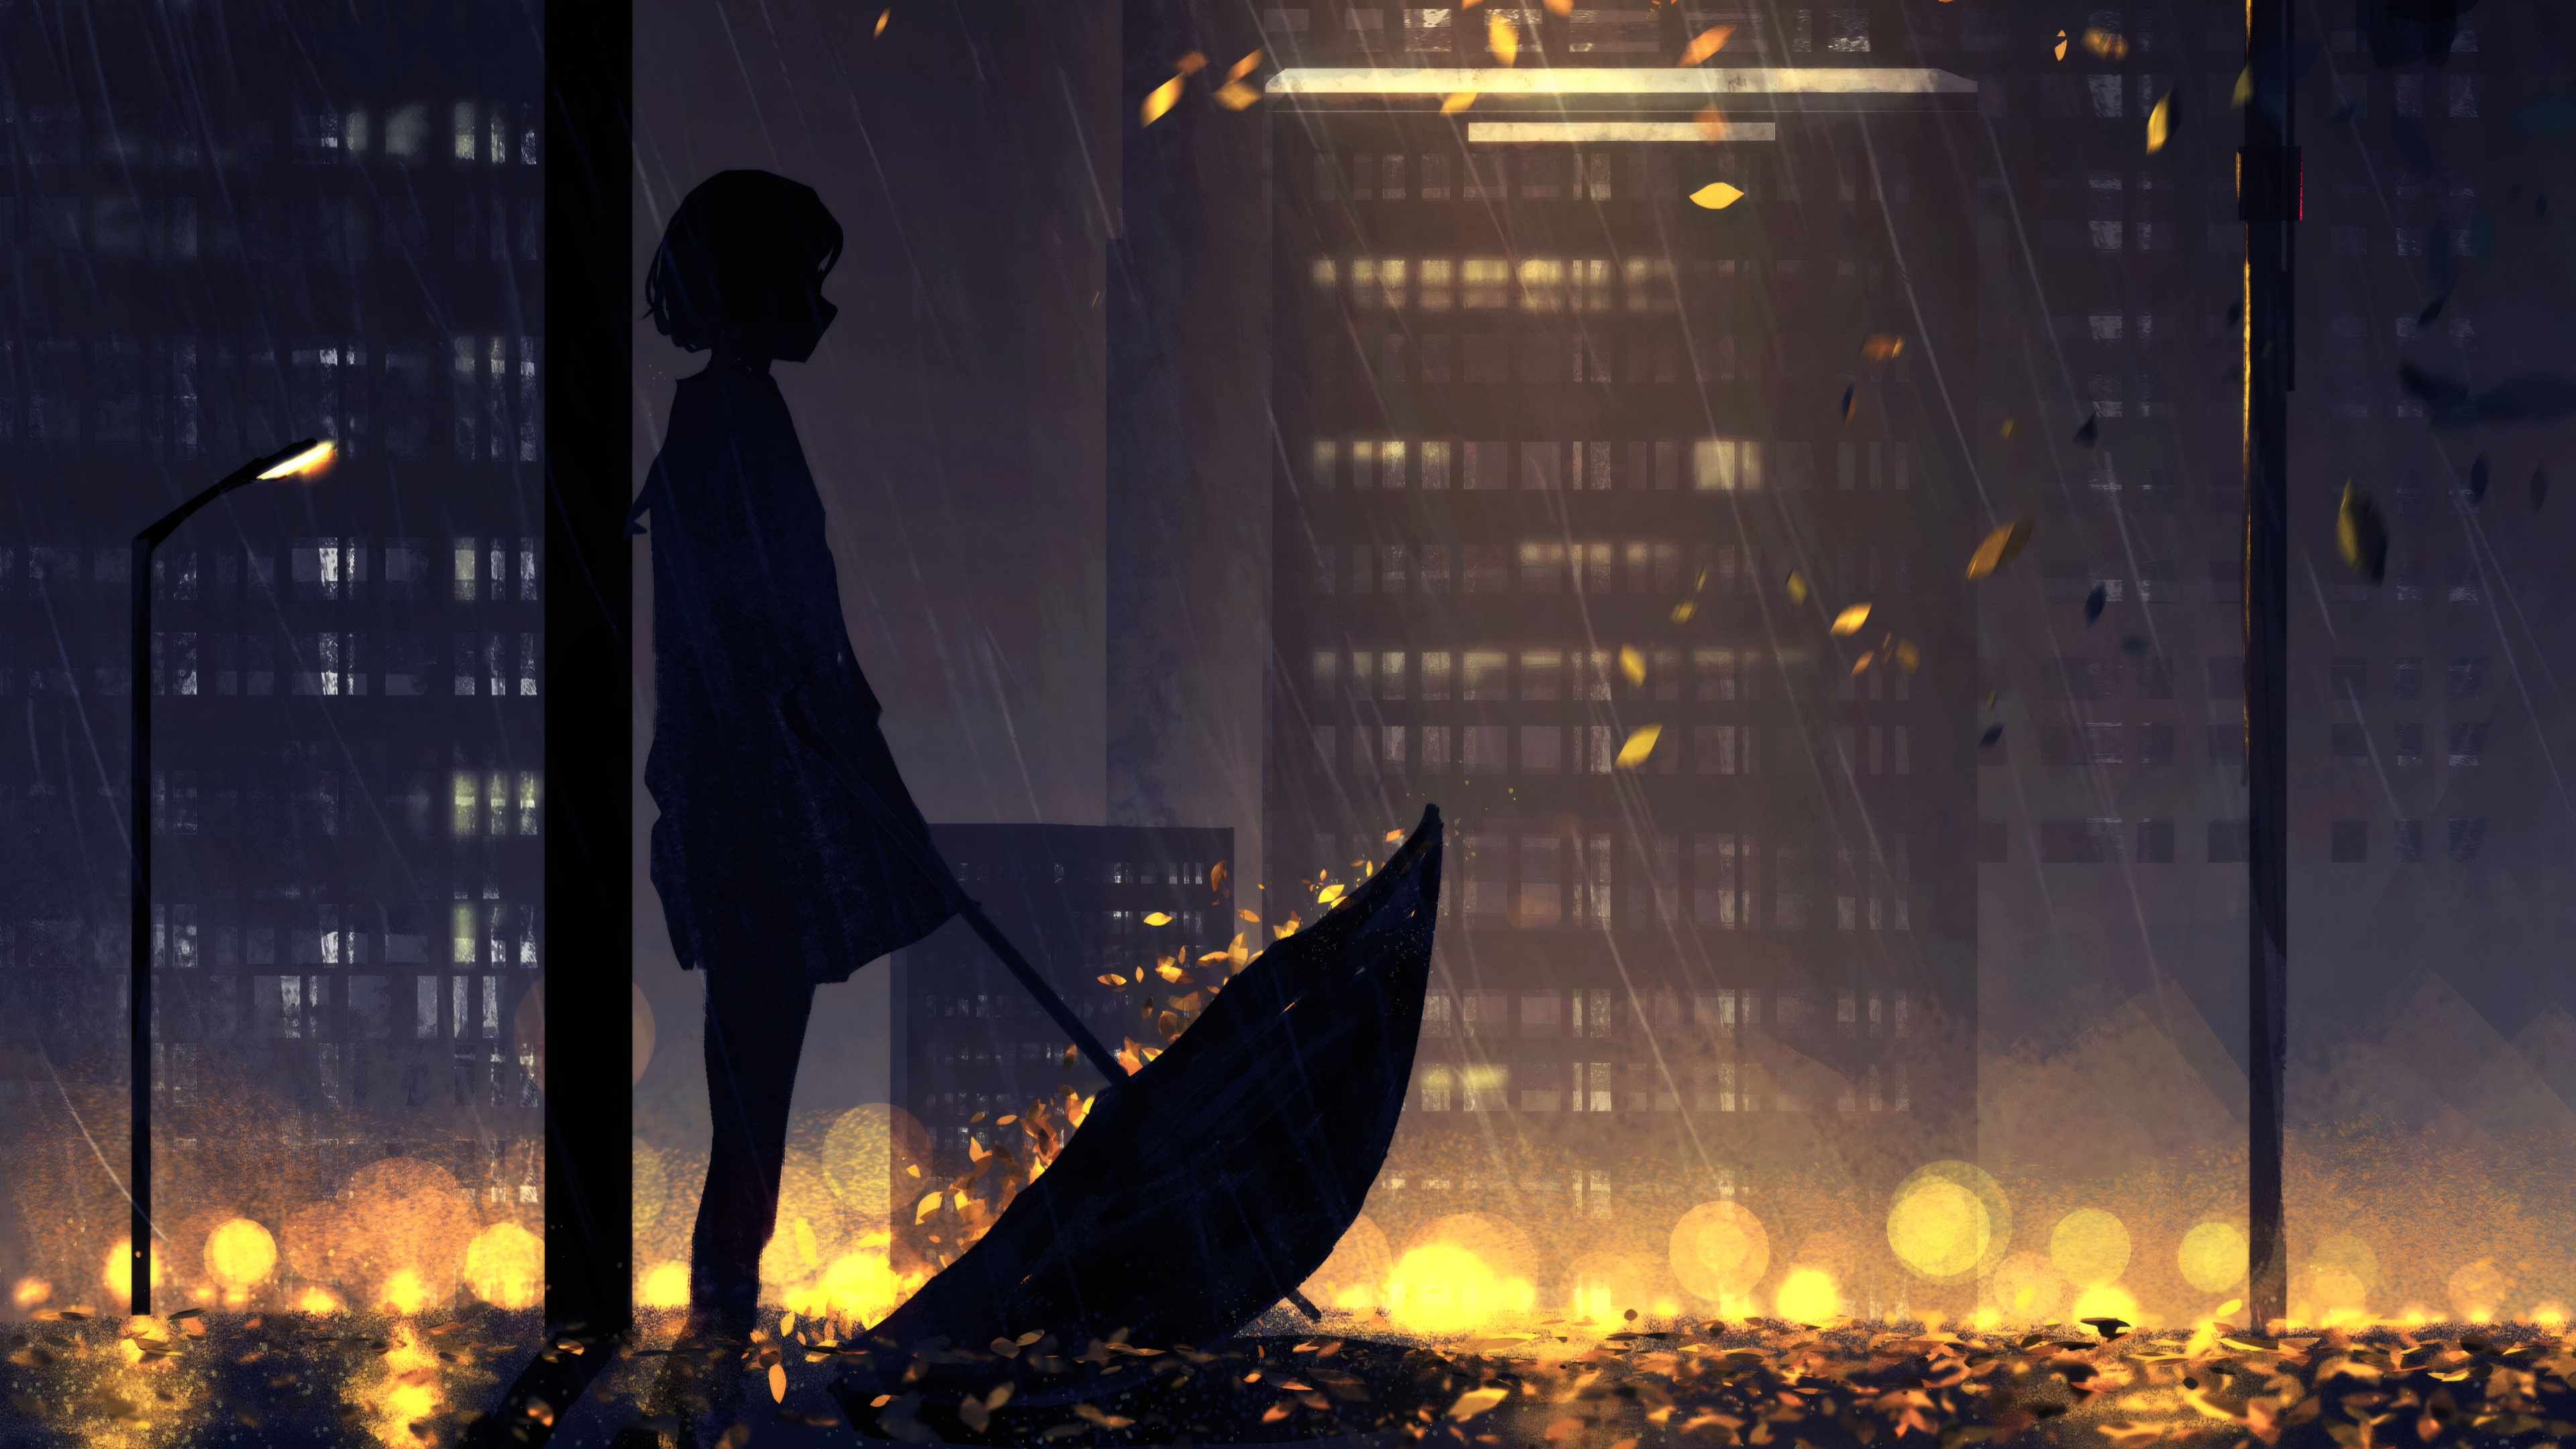 HuashiJW Rain Umbrella Night Street Light Fall Fallen Leaves Digital Art Artwork 3840x2160